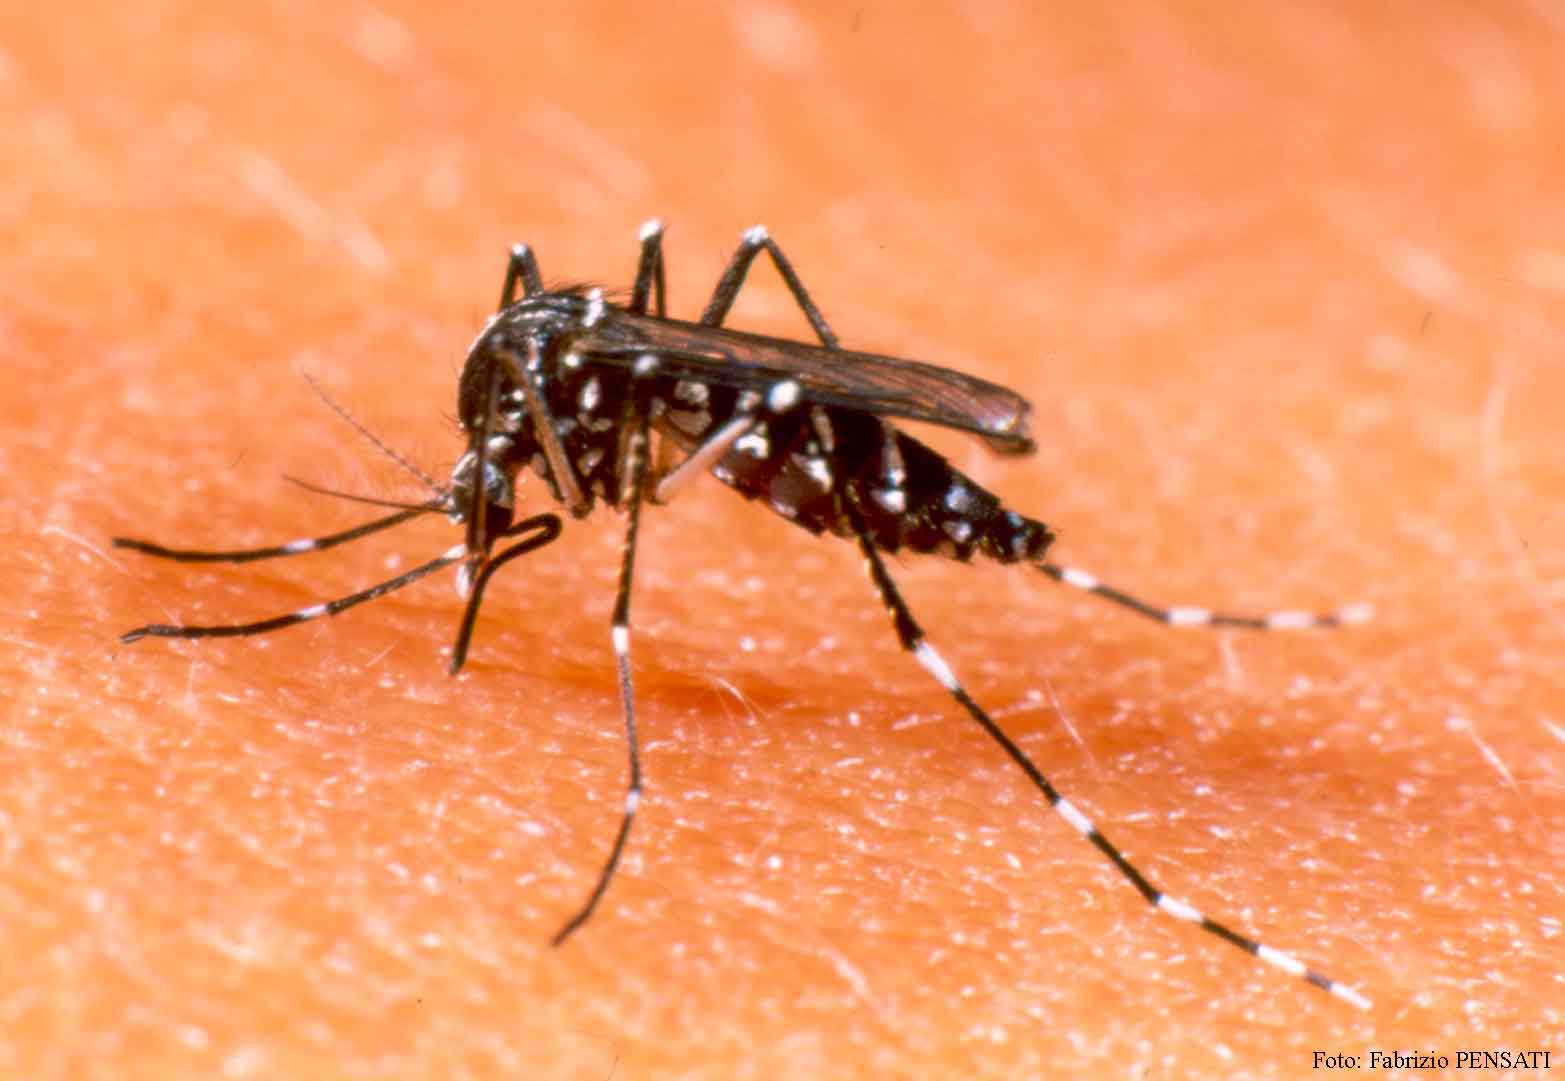  Casos de dengue caem 41% no 1° semestre de 2015 em Parauapebas